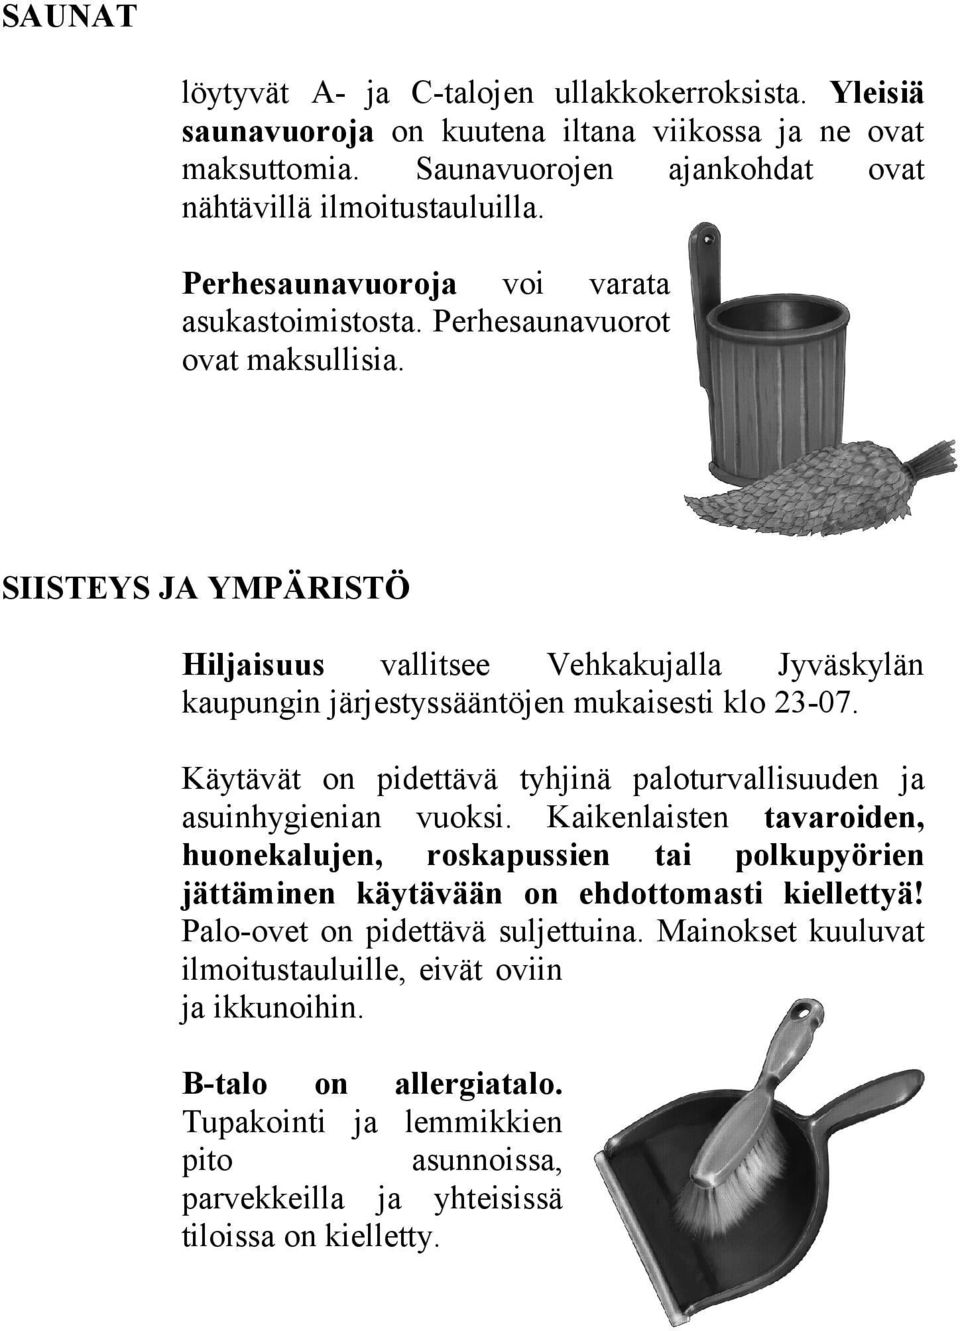 SIISTEYS JA YMPÄRISTÖ Hiljaisuus vallitsee Vehkakujalla Jyväskylän kaupungin järjestyssääntöjen mukaisesti klo 23-07. Käytävät on pidettävä tyhjinä paloturvallisuuden ja asuinhygienian vuoksi.